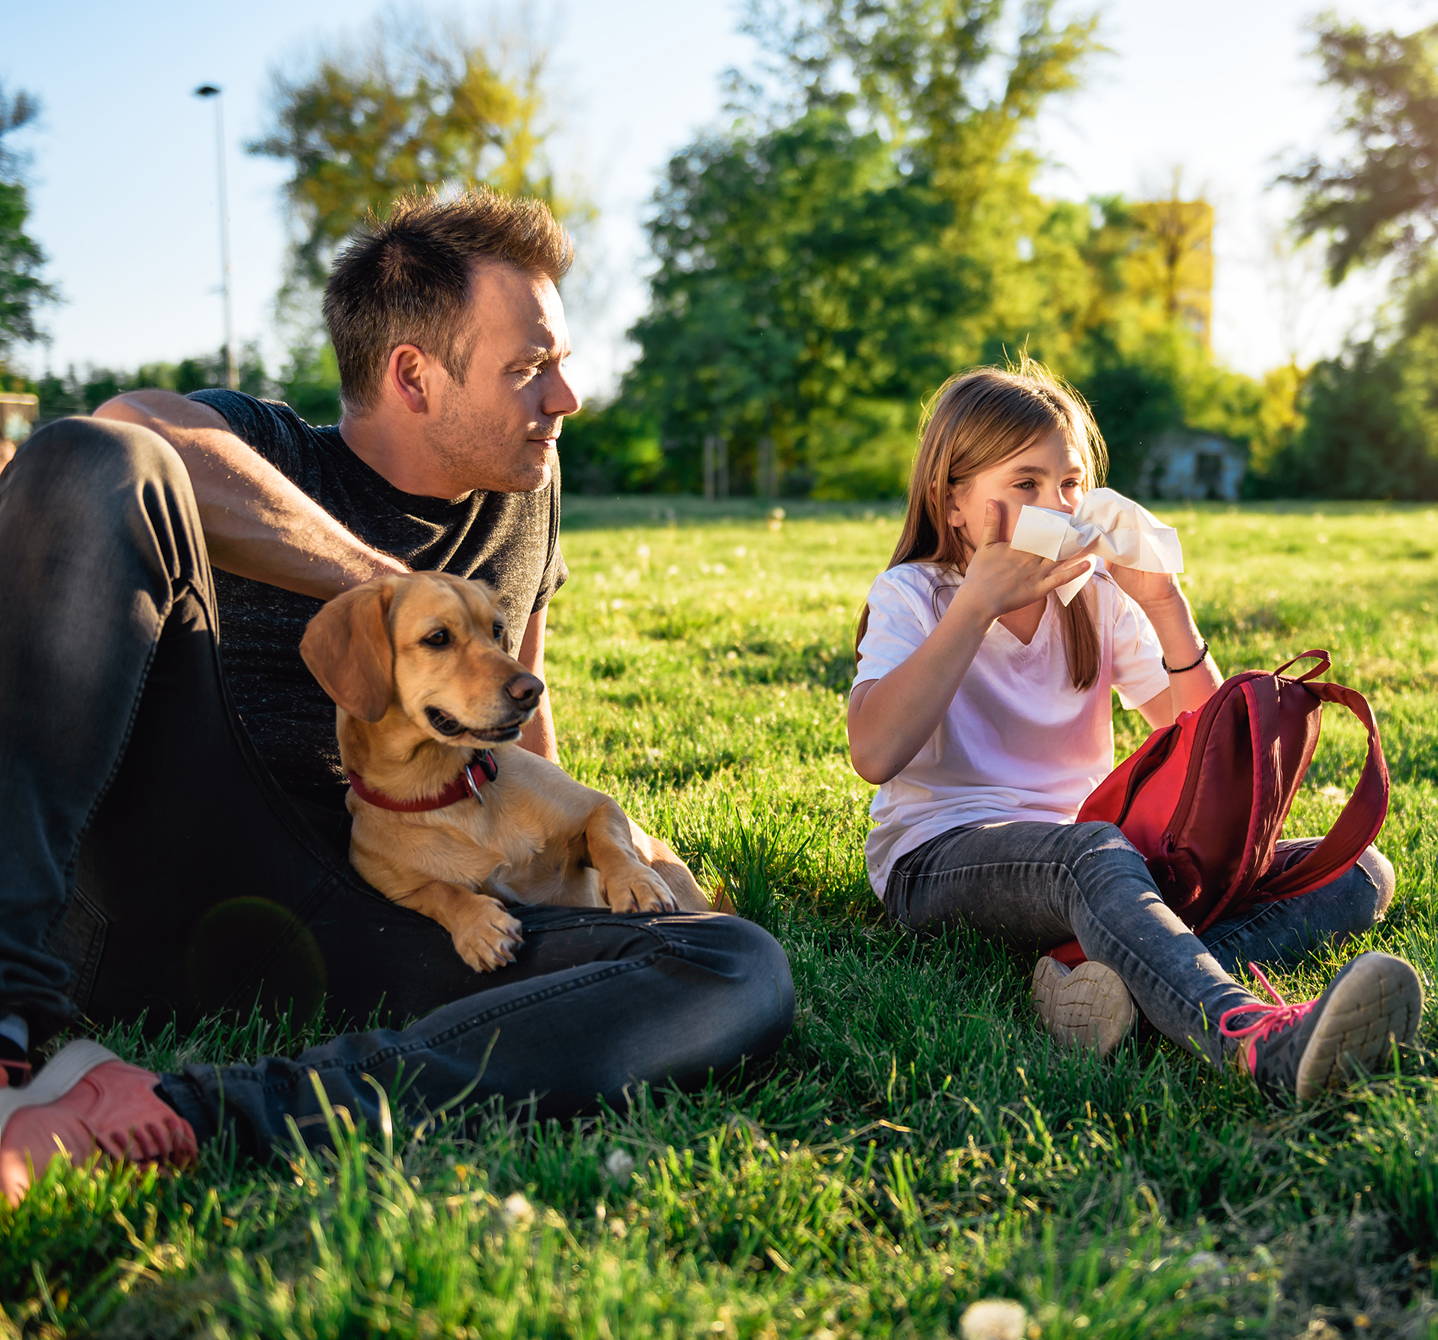 Durante una giornata estiva, una ragazzina allergica ai pollini seduta su un prato insieme al padre e al cane si soffia il naso